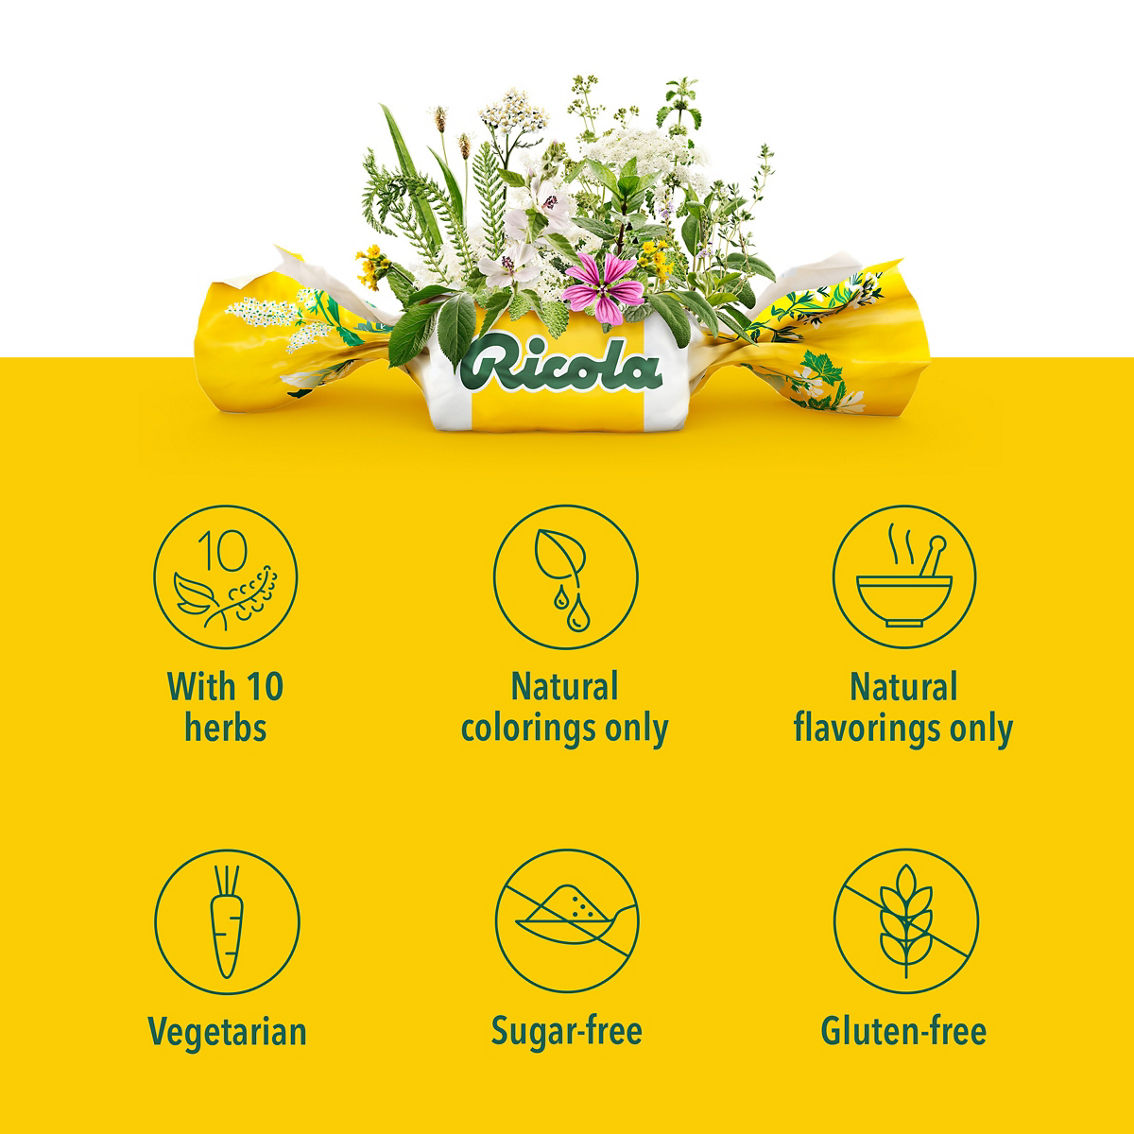 Ricola Sugar Free Lemon Mint Herbal Throat Drops 19 ct - Image 5 of 5